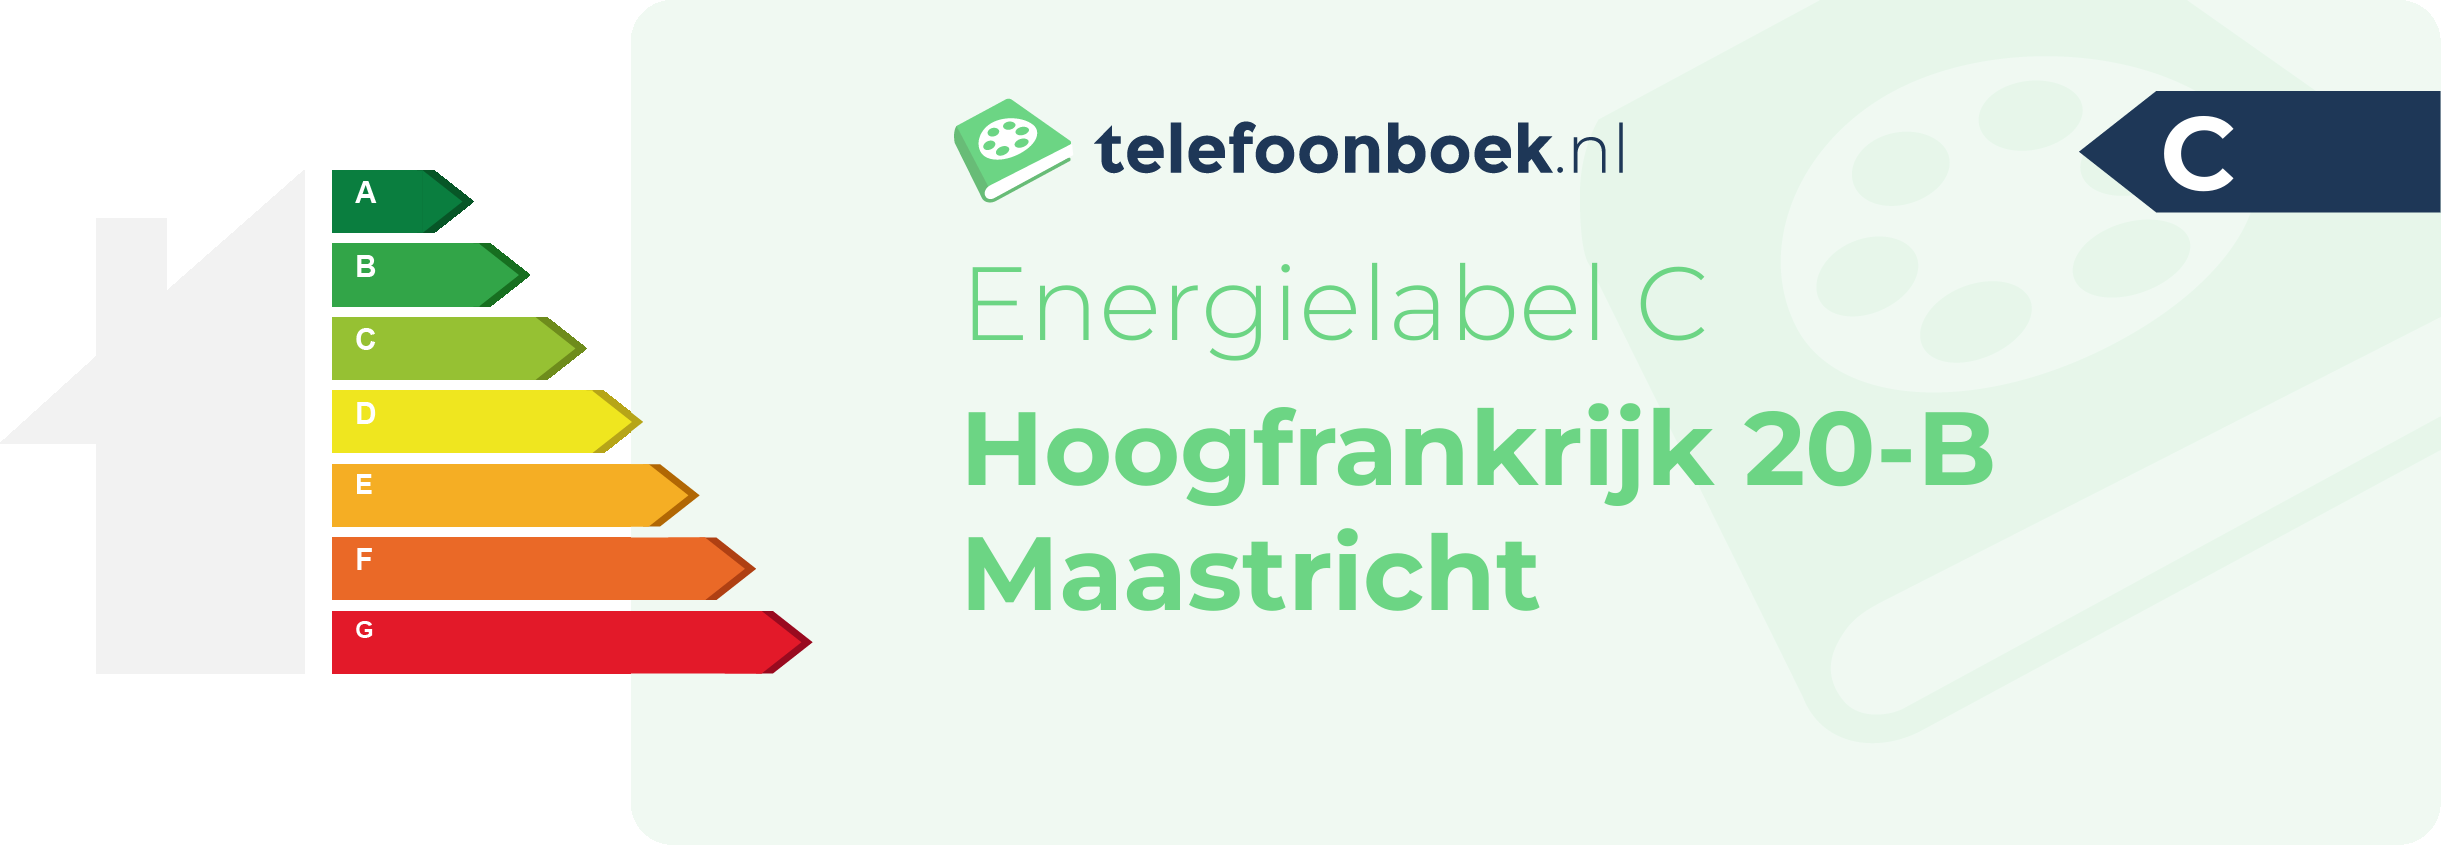 Energielabel Hoogfrankrijk 20-B Maastricht